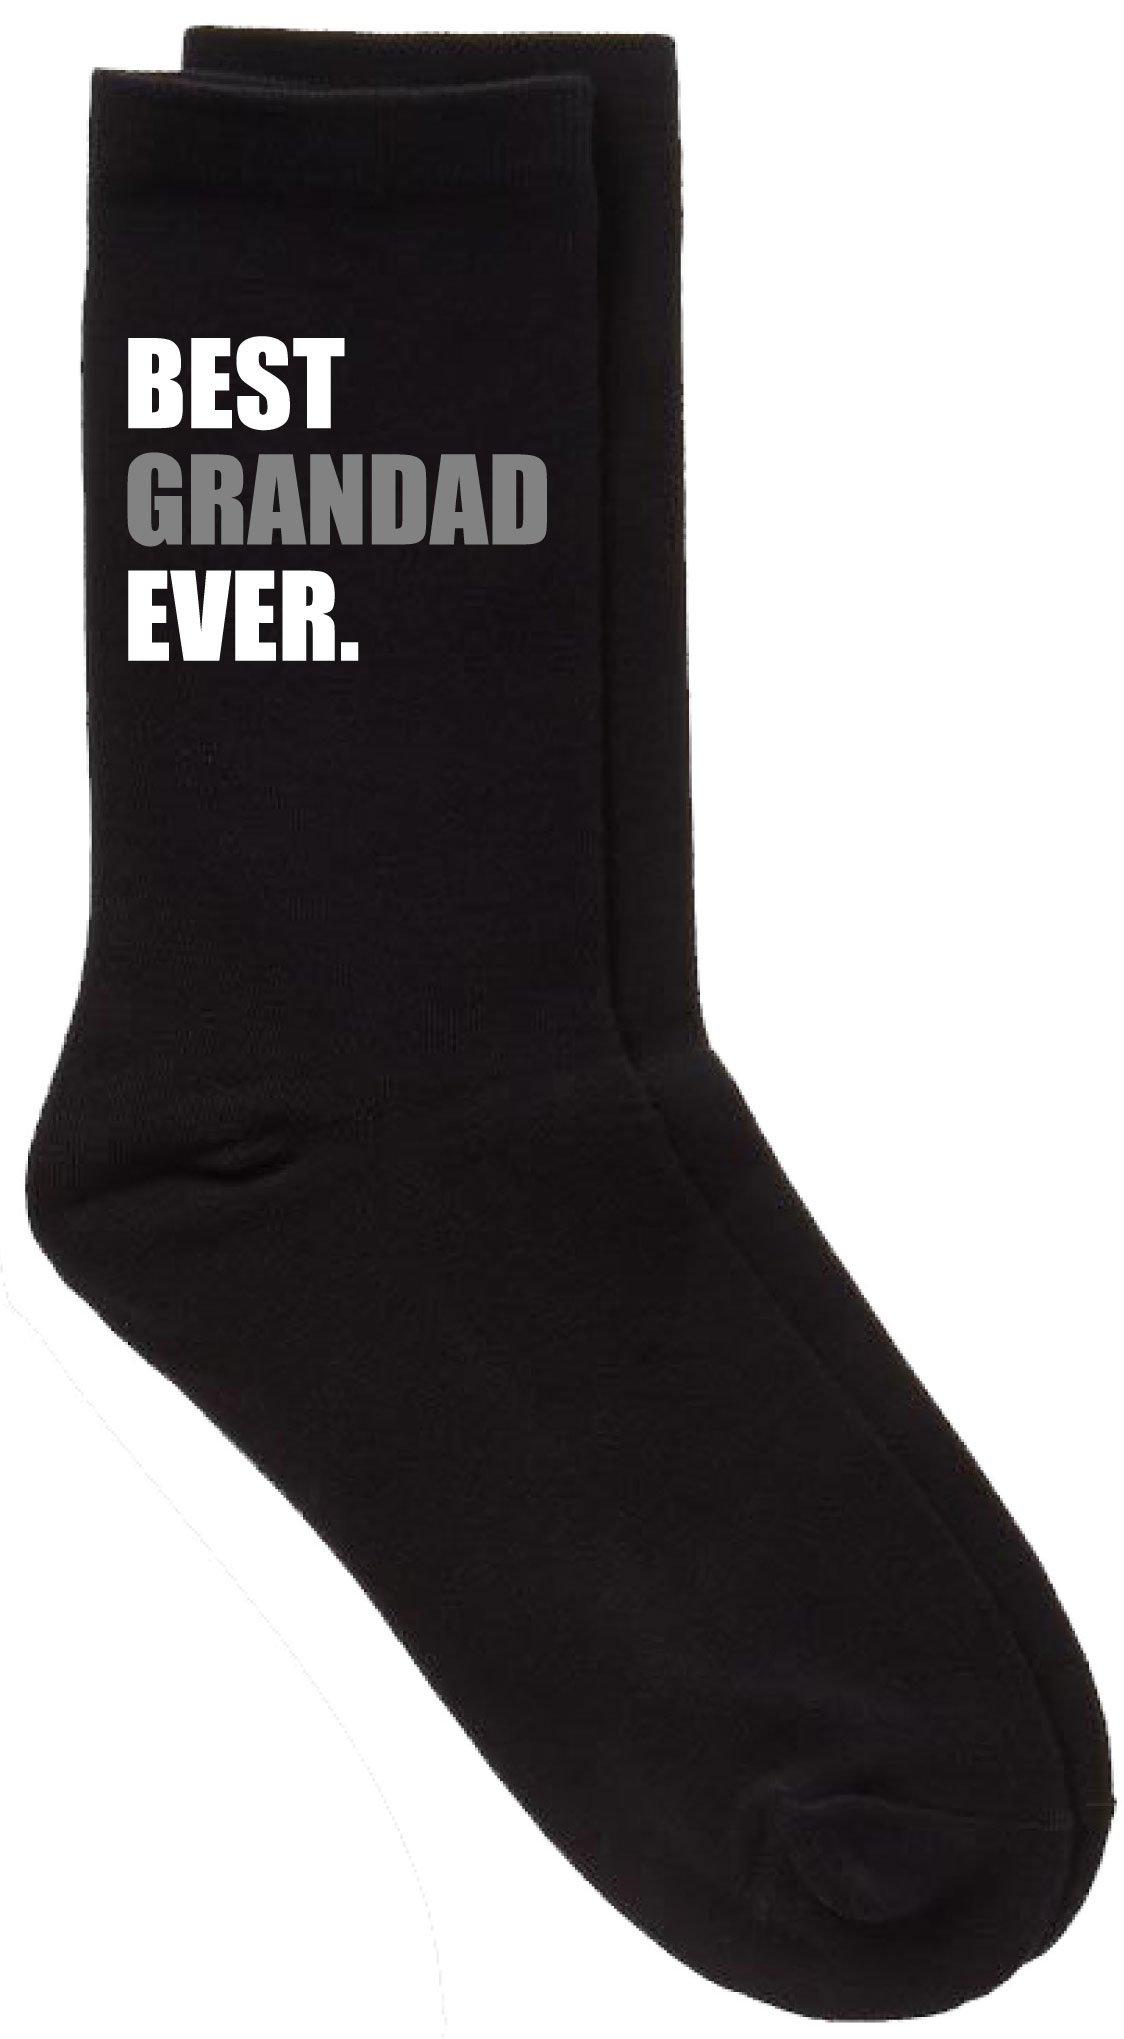 черные носки best dad ever v2 60 second makeover черный Черные носки Best Grandad Ever V2 60 SECOND MAKEOVER, черный